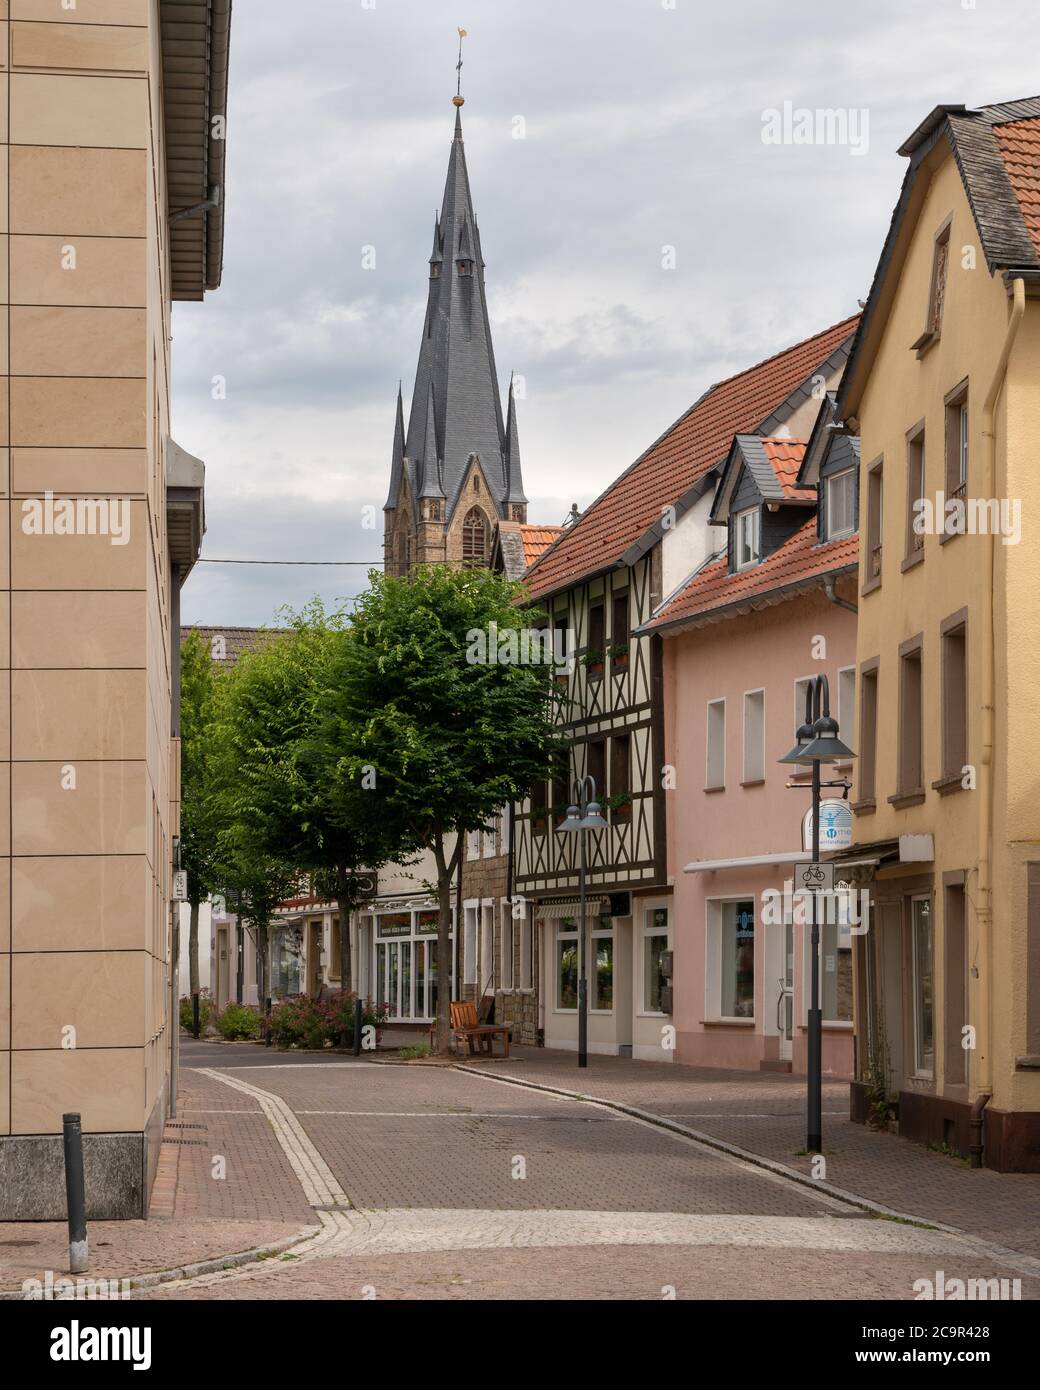 BAD SOBERNHEIM, ALLEMAGNE - 27 JUIN 2020 : anciens bâtiments dans le centre-ville de Bad Sobernheim contre ciel nuageux le 27 juin 2020 en Allemagne Banque D'Images